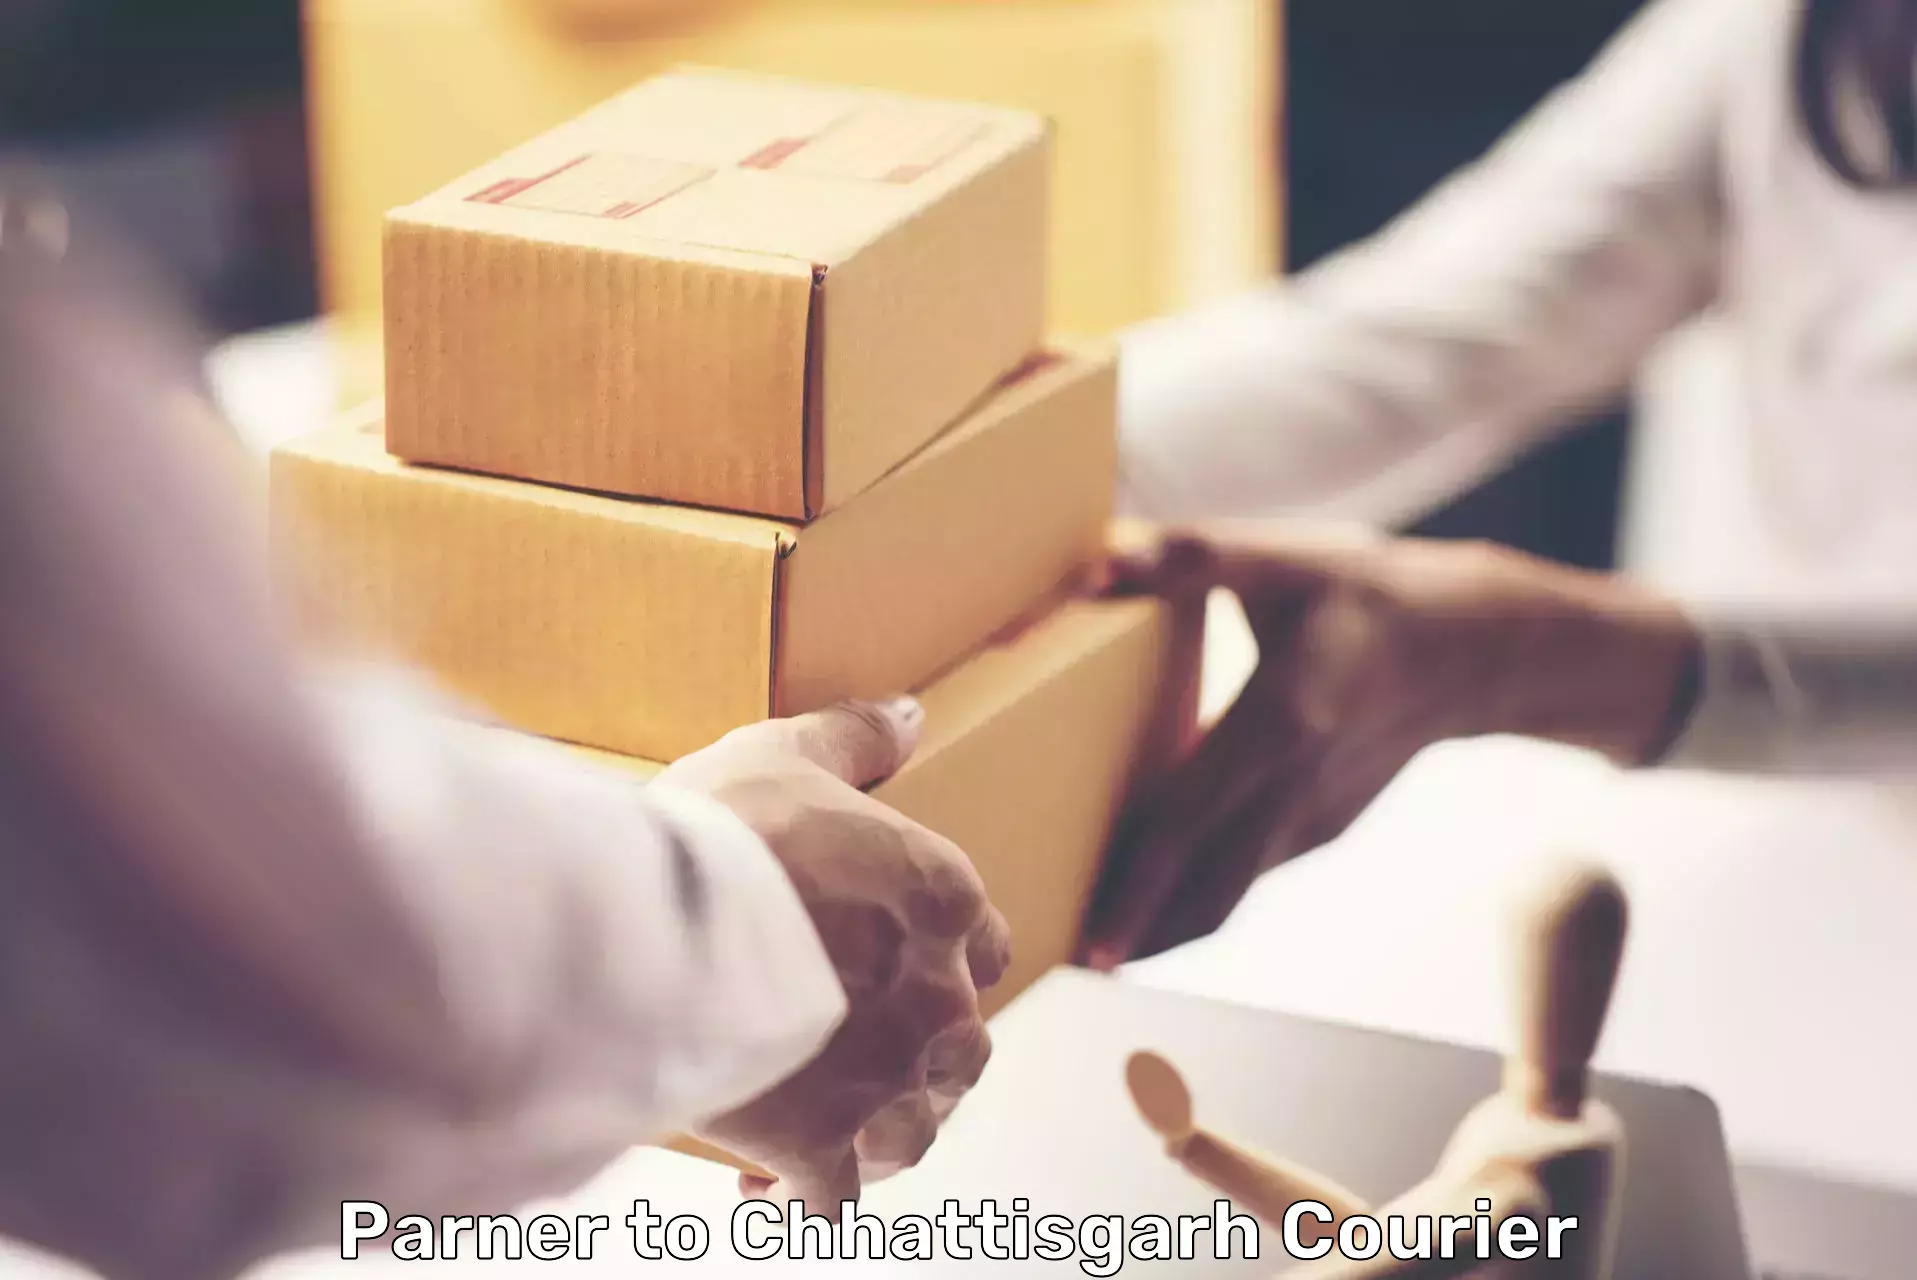 Express delivery solutions Parner to Kanker